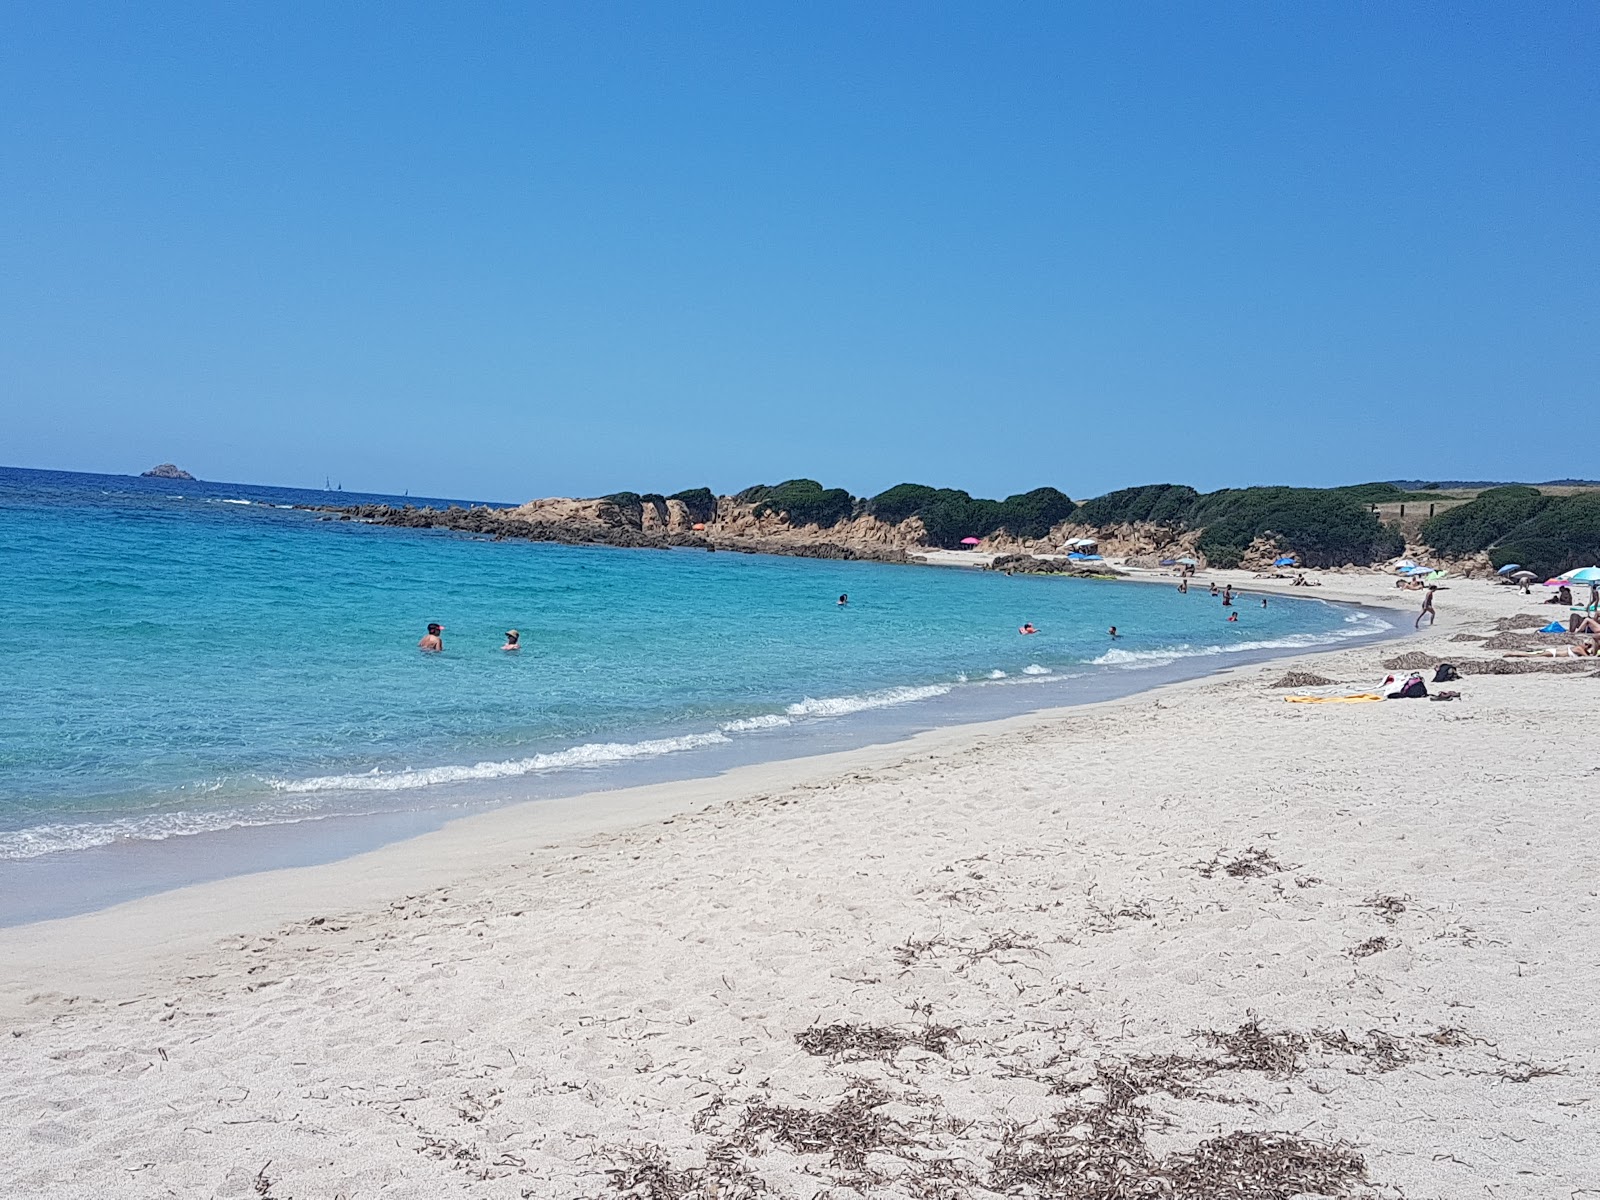 Fotografie cu Saint-Antoine beach - locul popular printre cunoscătorii de relaxare